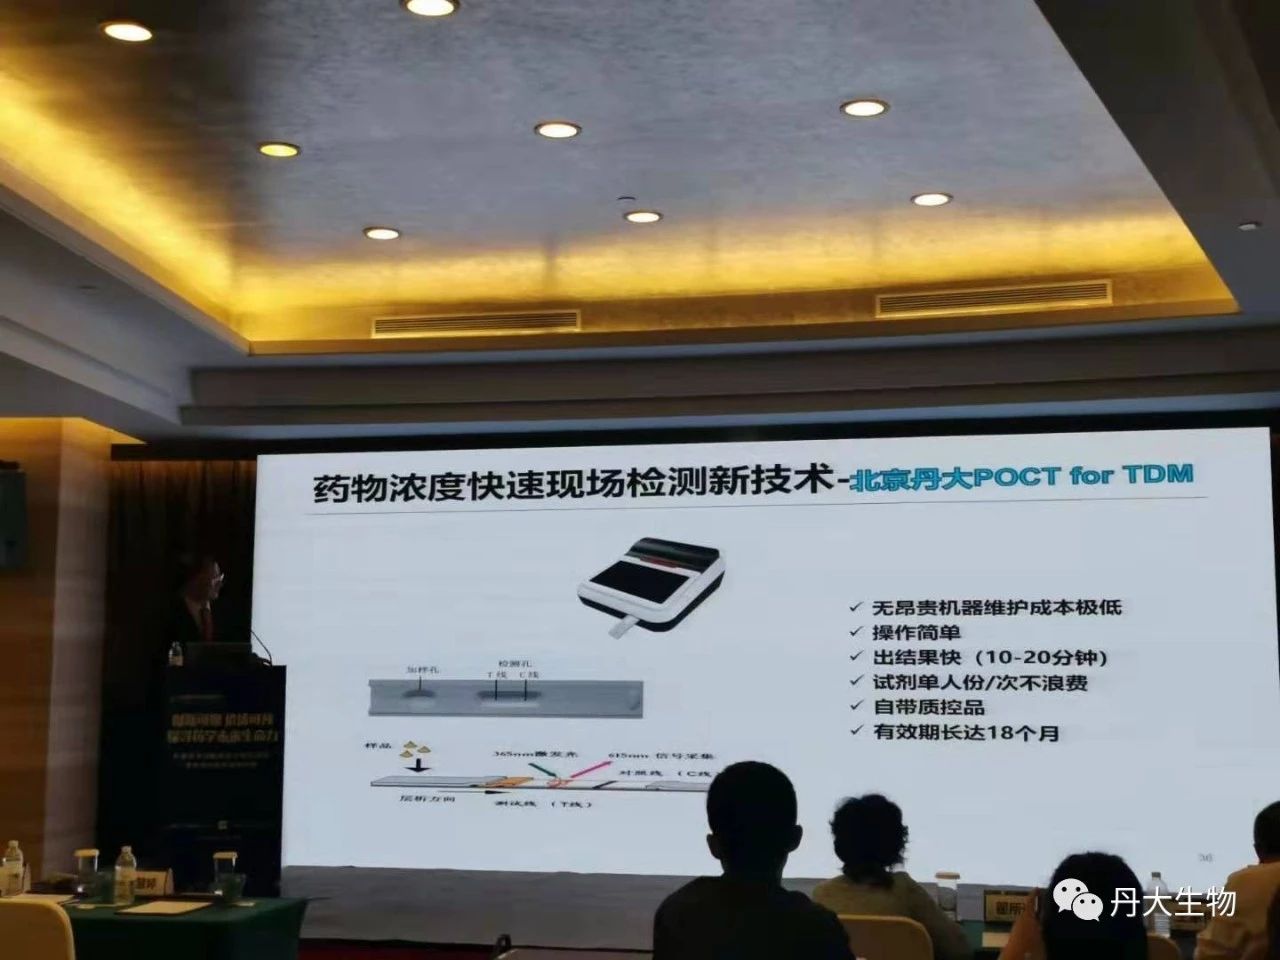 bat365在线平台网站创新专利TDM亮相第九届临床药学湘雅国际论坛